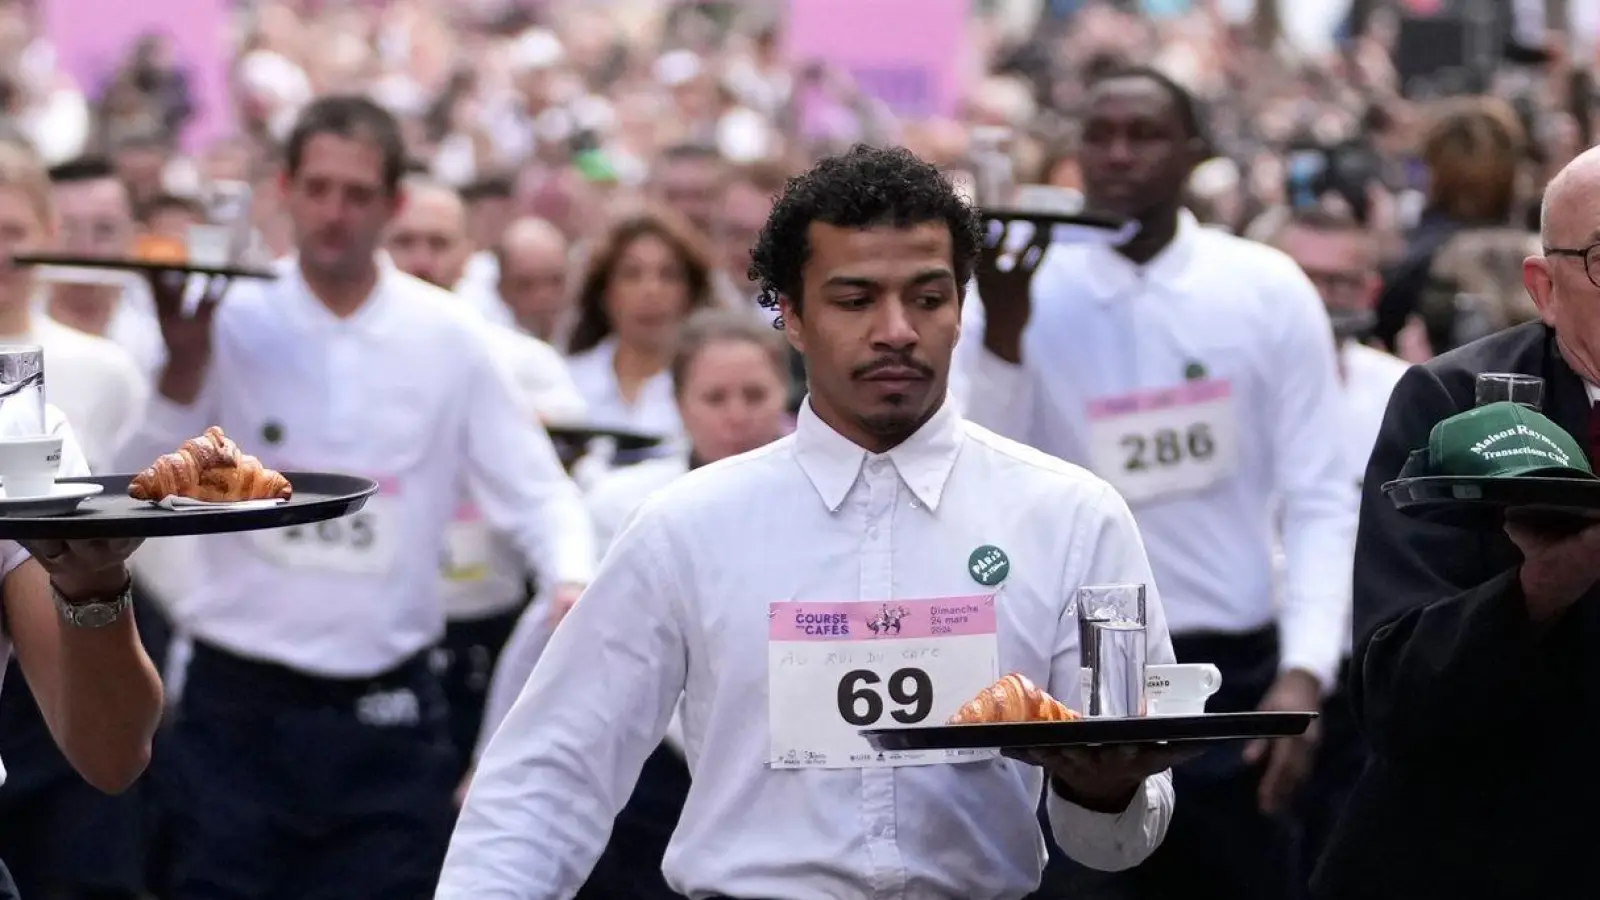 Zwei Kilometer ohne zu rennen und ohne etwas zu verschütten: Dieser Aufgabe stellen sich Kellnerinnen und Kellner in Paris. (Foto: Christophe Ena/AP/dpa)